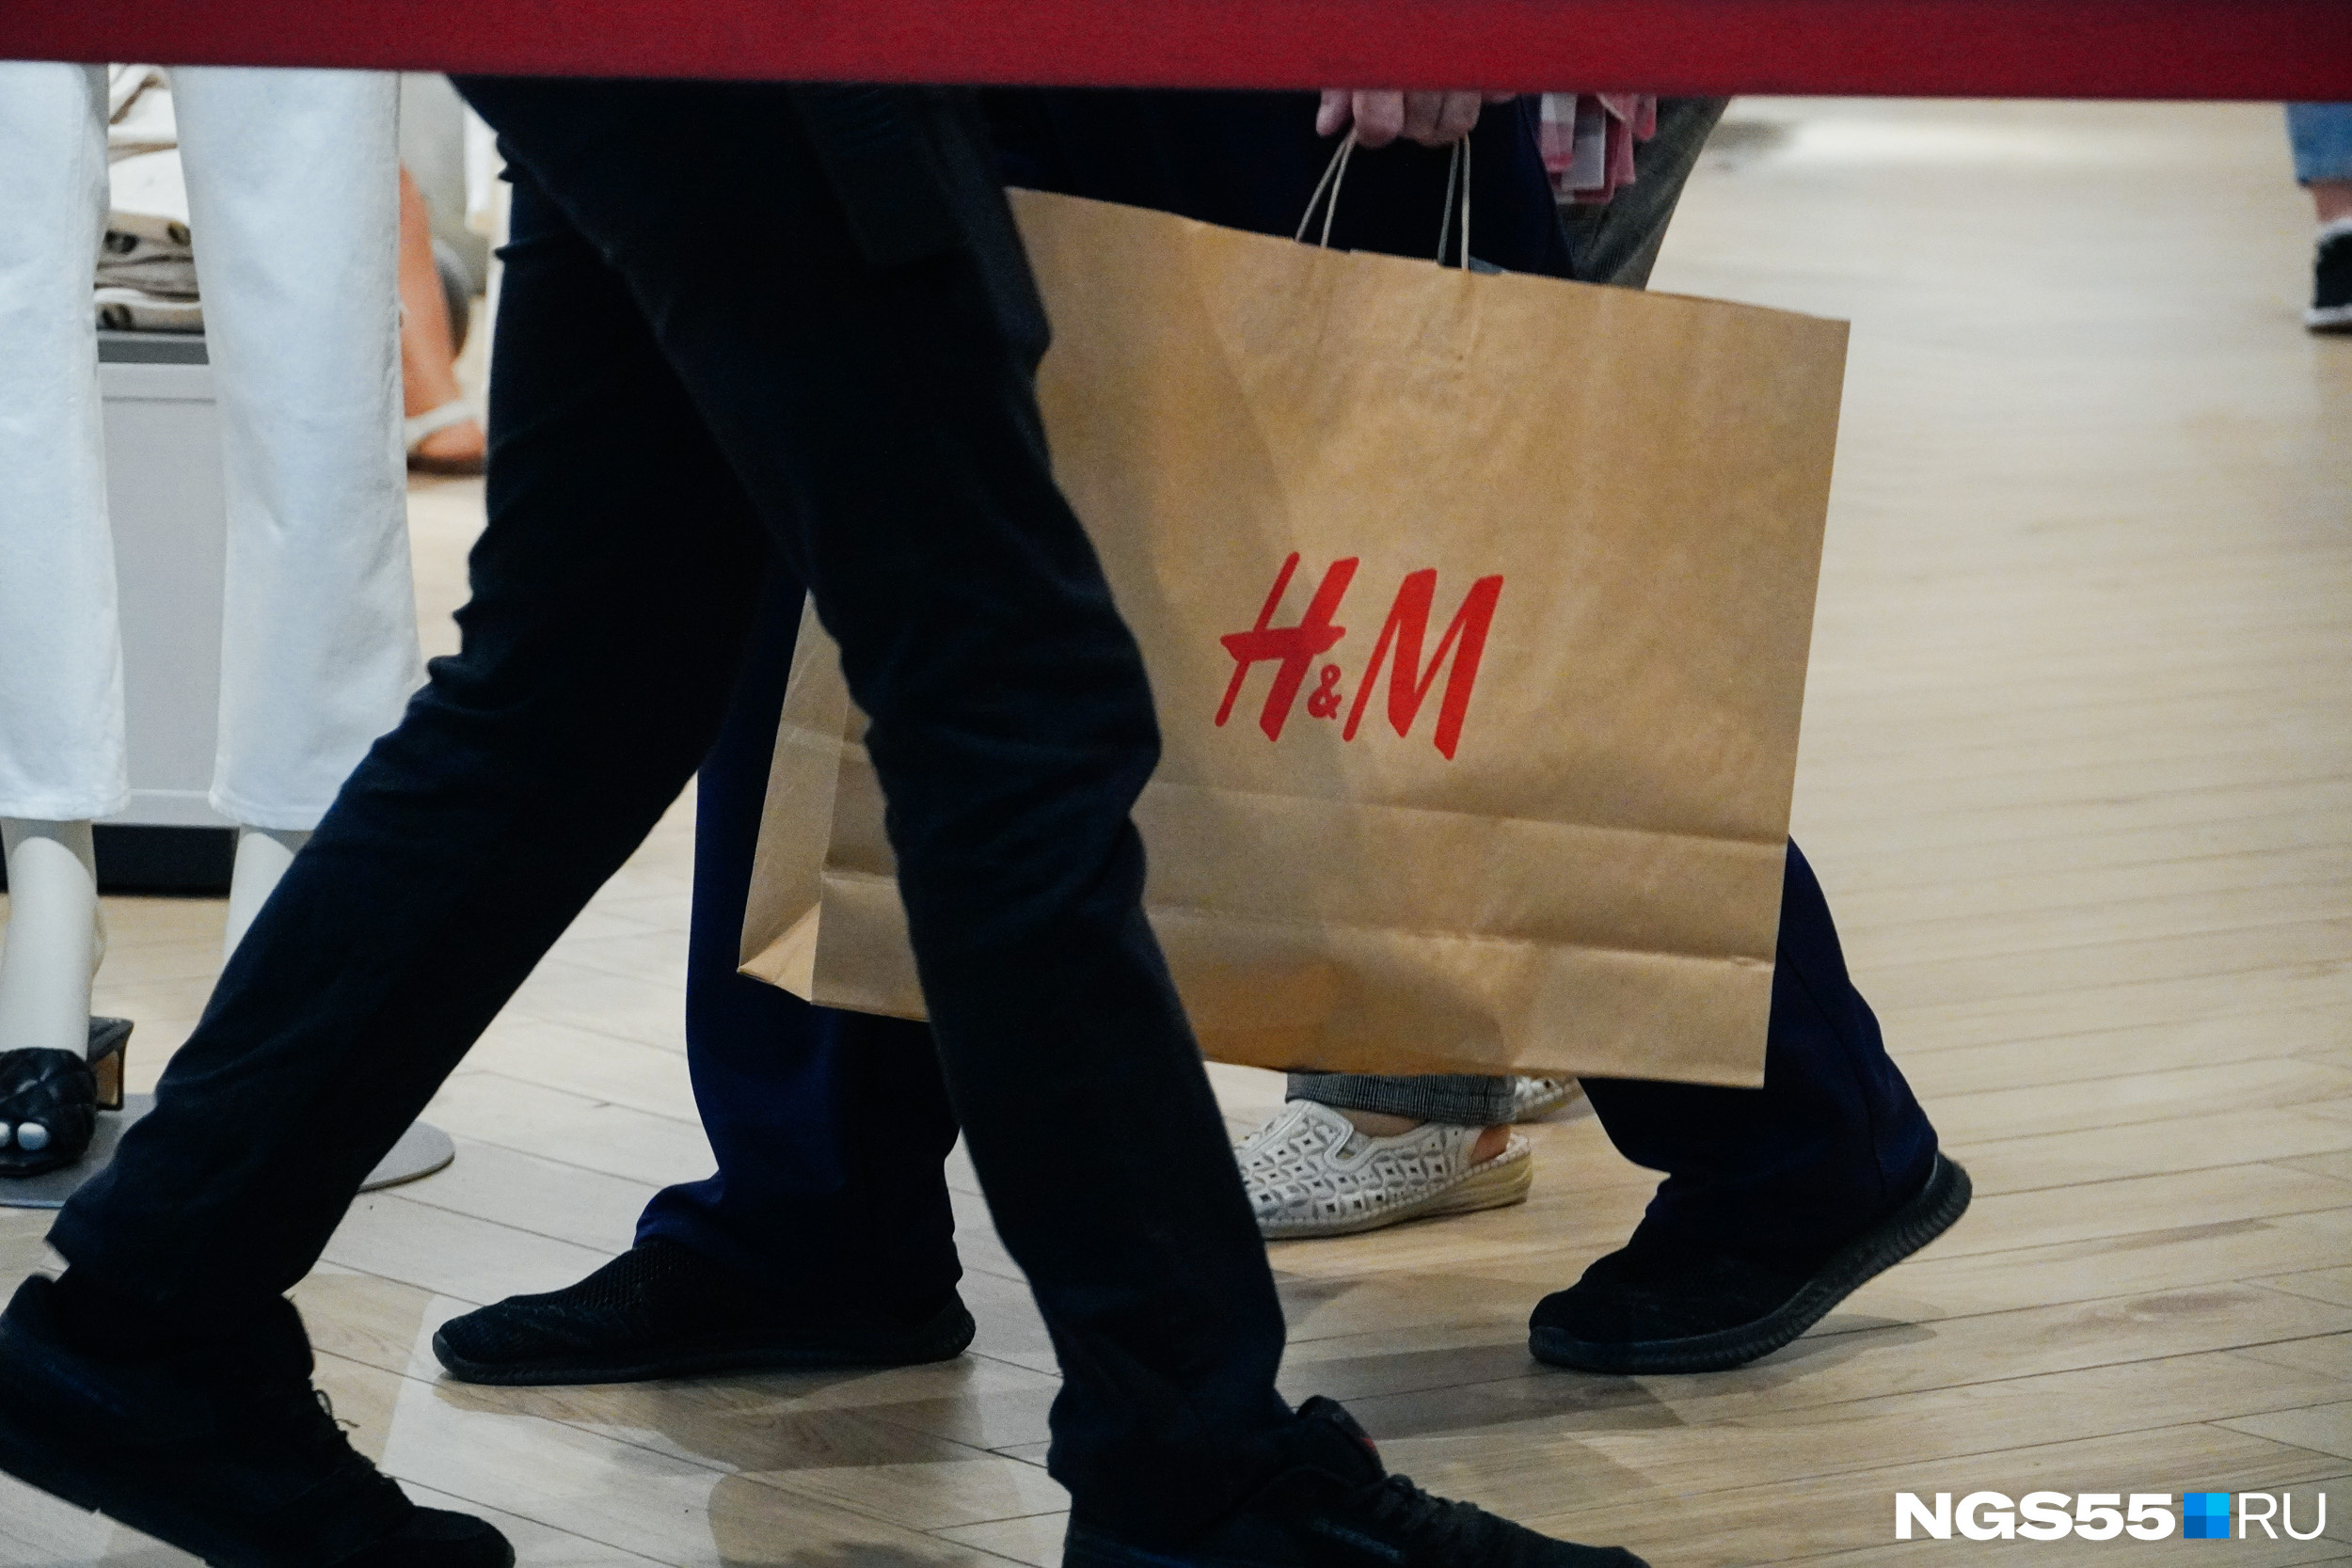 Одна из омичек, пришедшая в H&M примерно в 20:30, рассказала, что людей не хотели пускать. Администратор магазина заявила, что на это время больше нельзя пройти в магазин. Однако через 20 минут проход возобновили снова